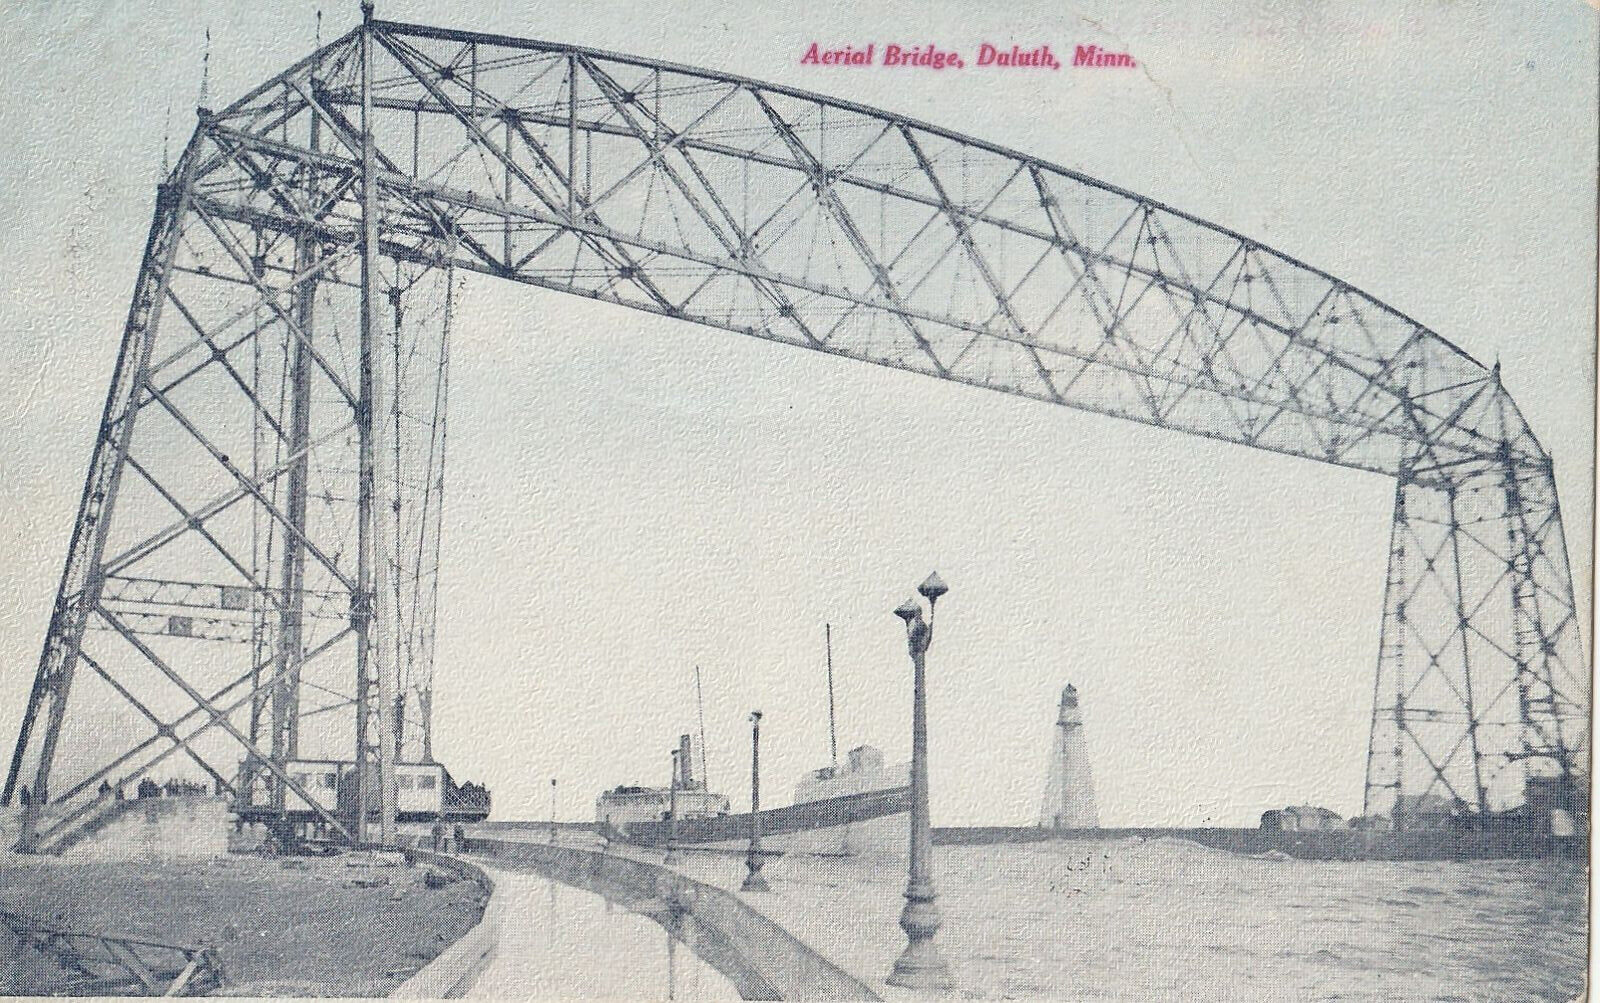 VINTAGE POSTCARD AERIAL BRIDGE AT DULUTH MINNESOTA POSTED 1908 RARE